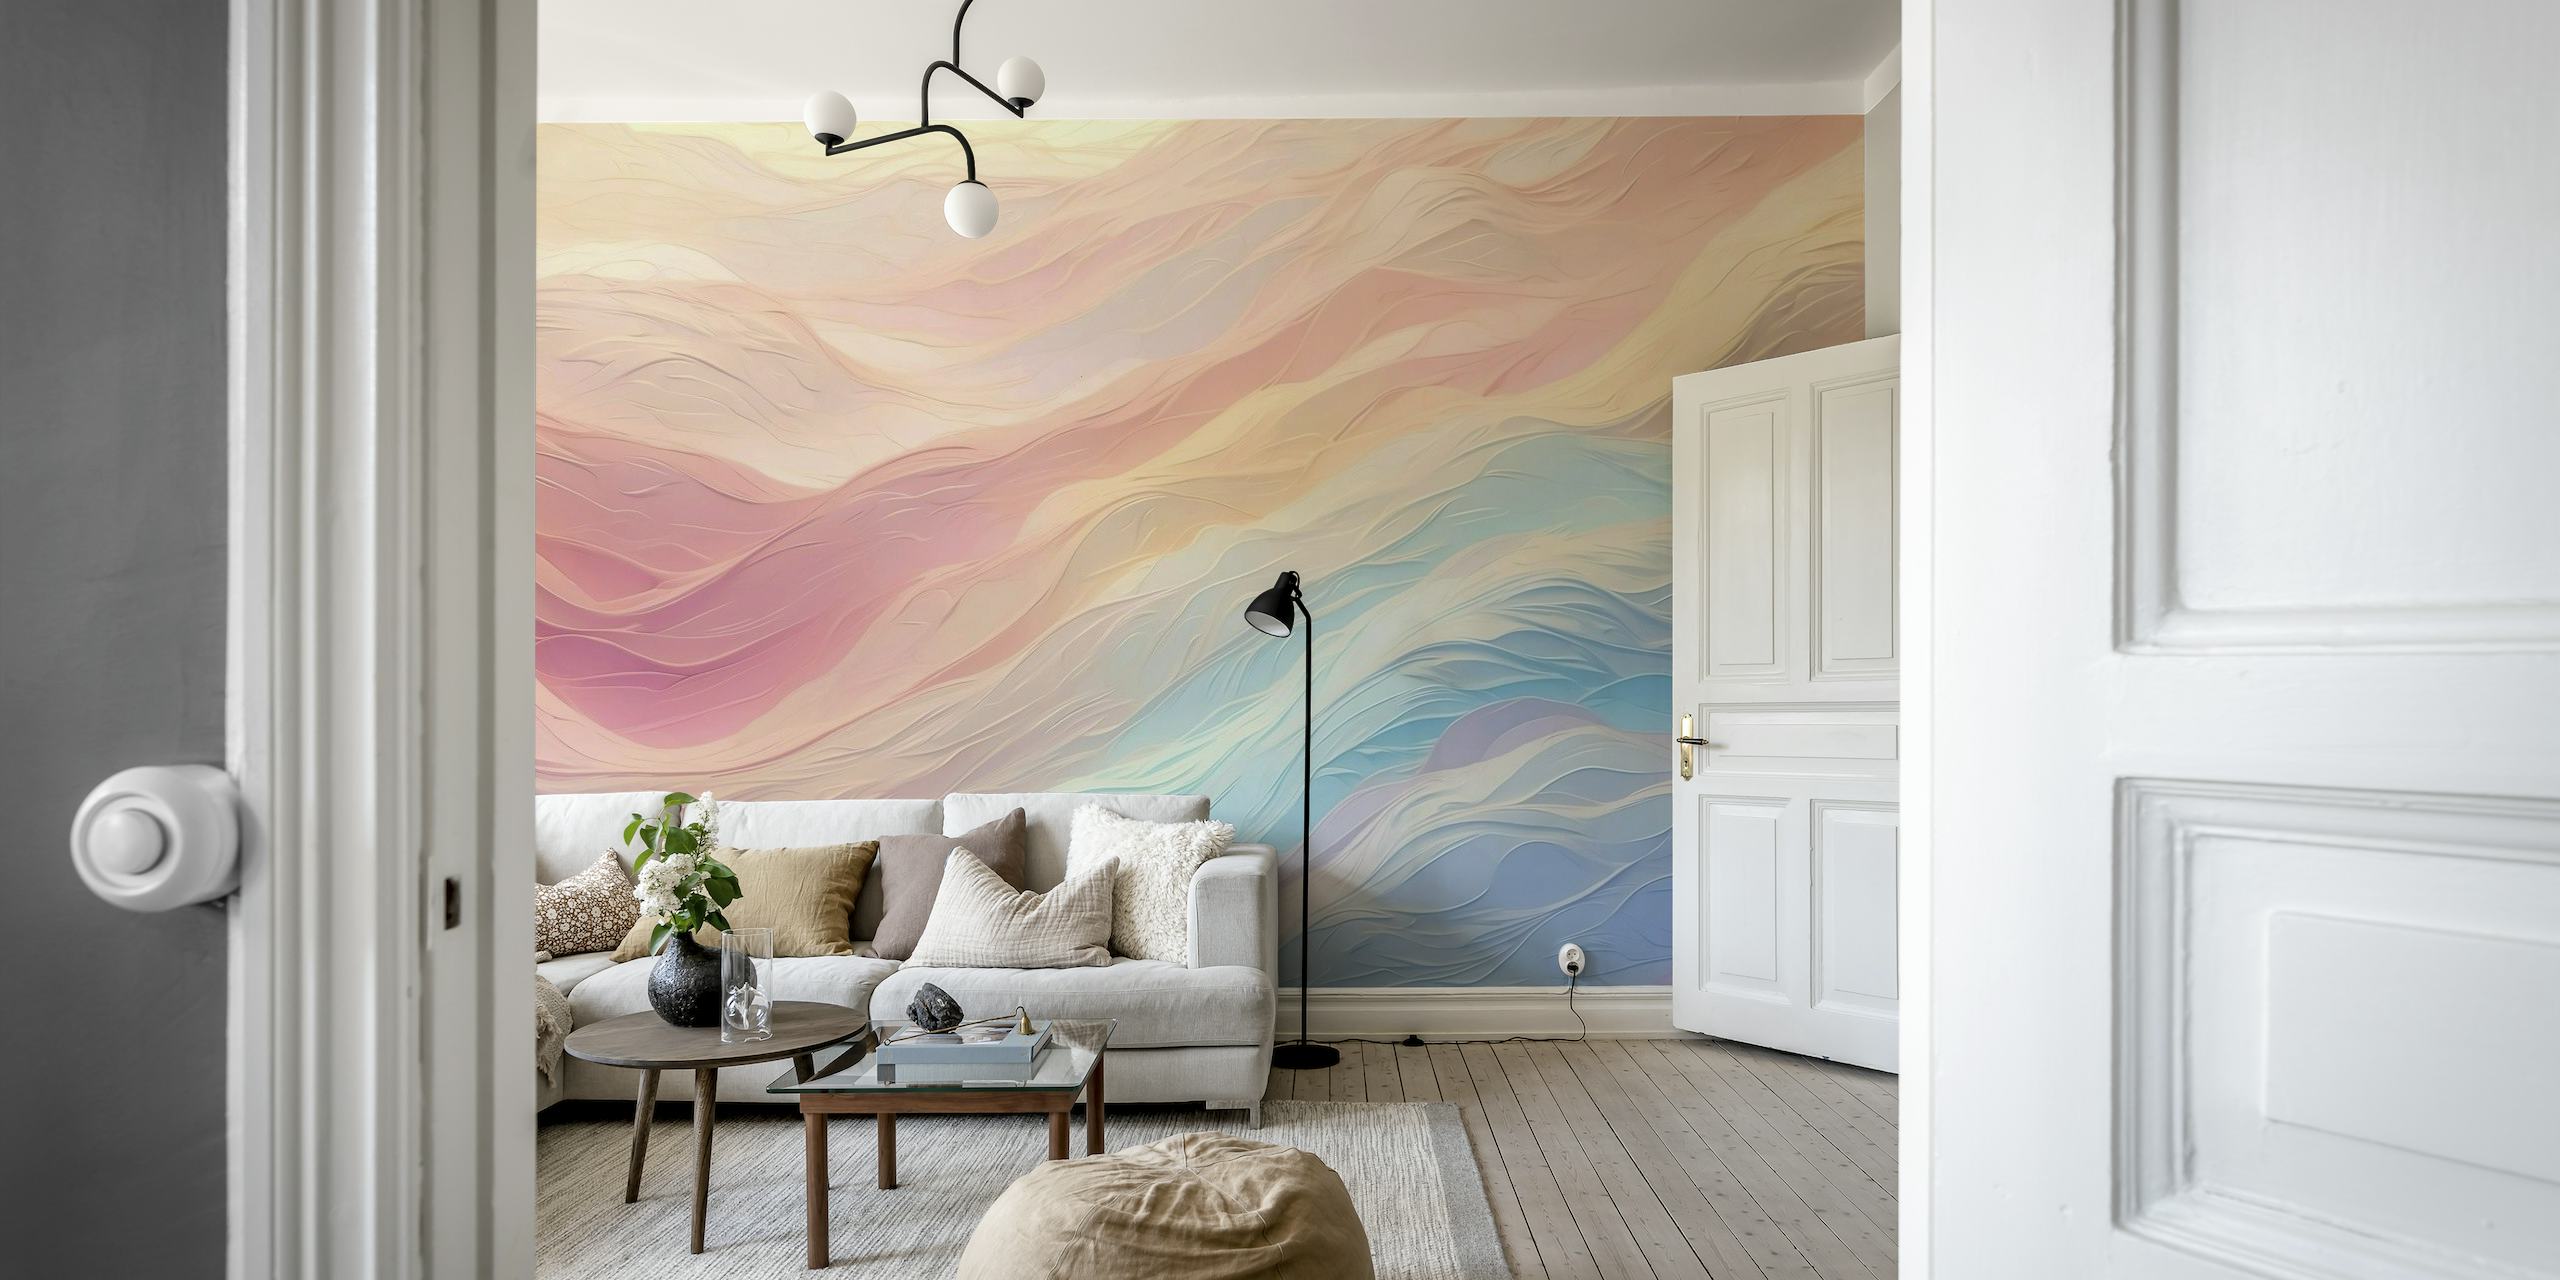 Decorazione murale con onde astratte in tenui colori pastello